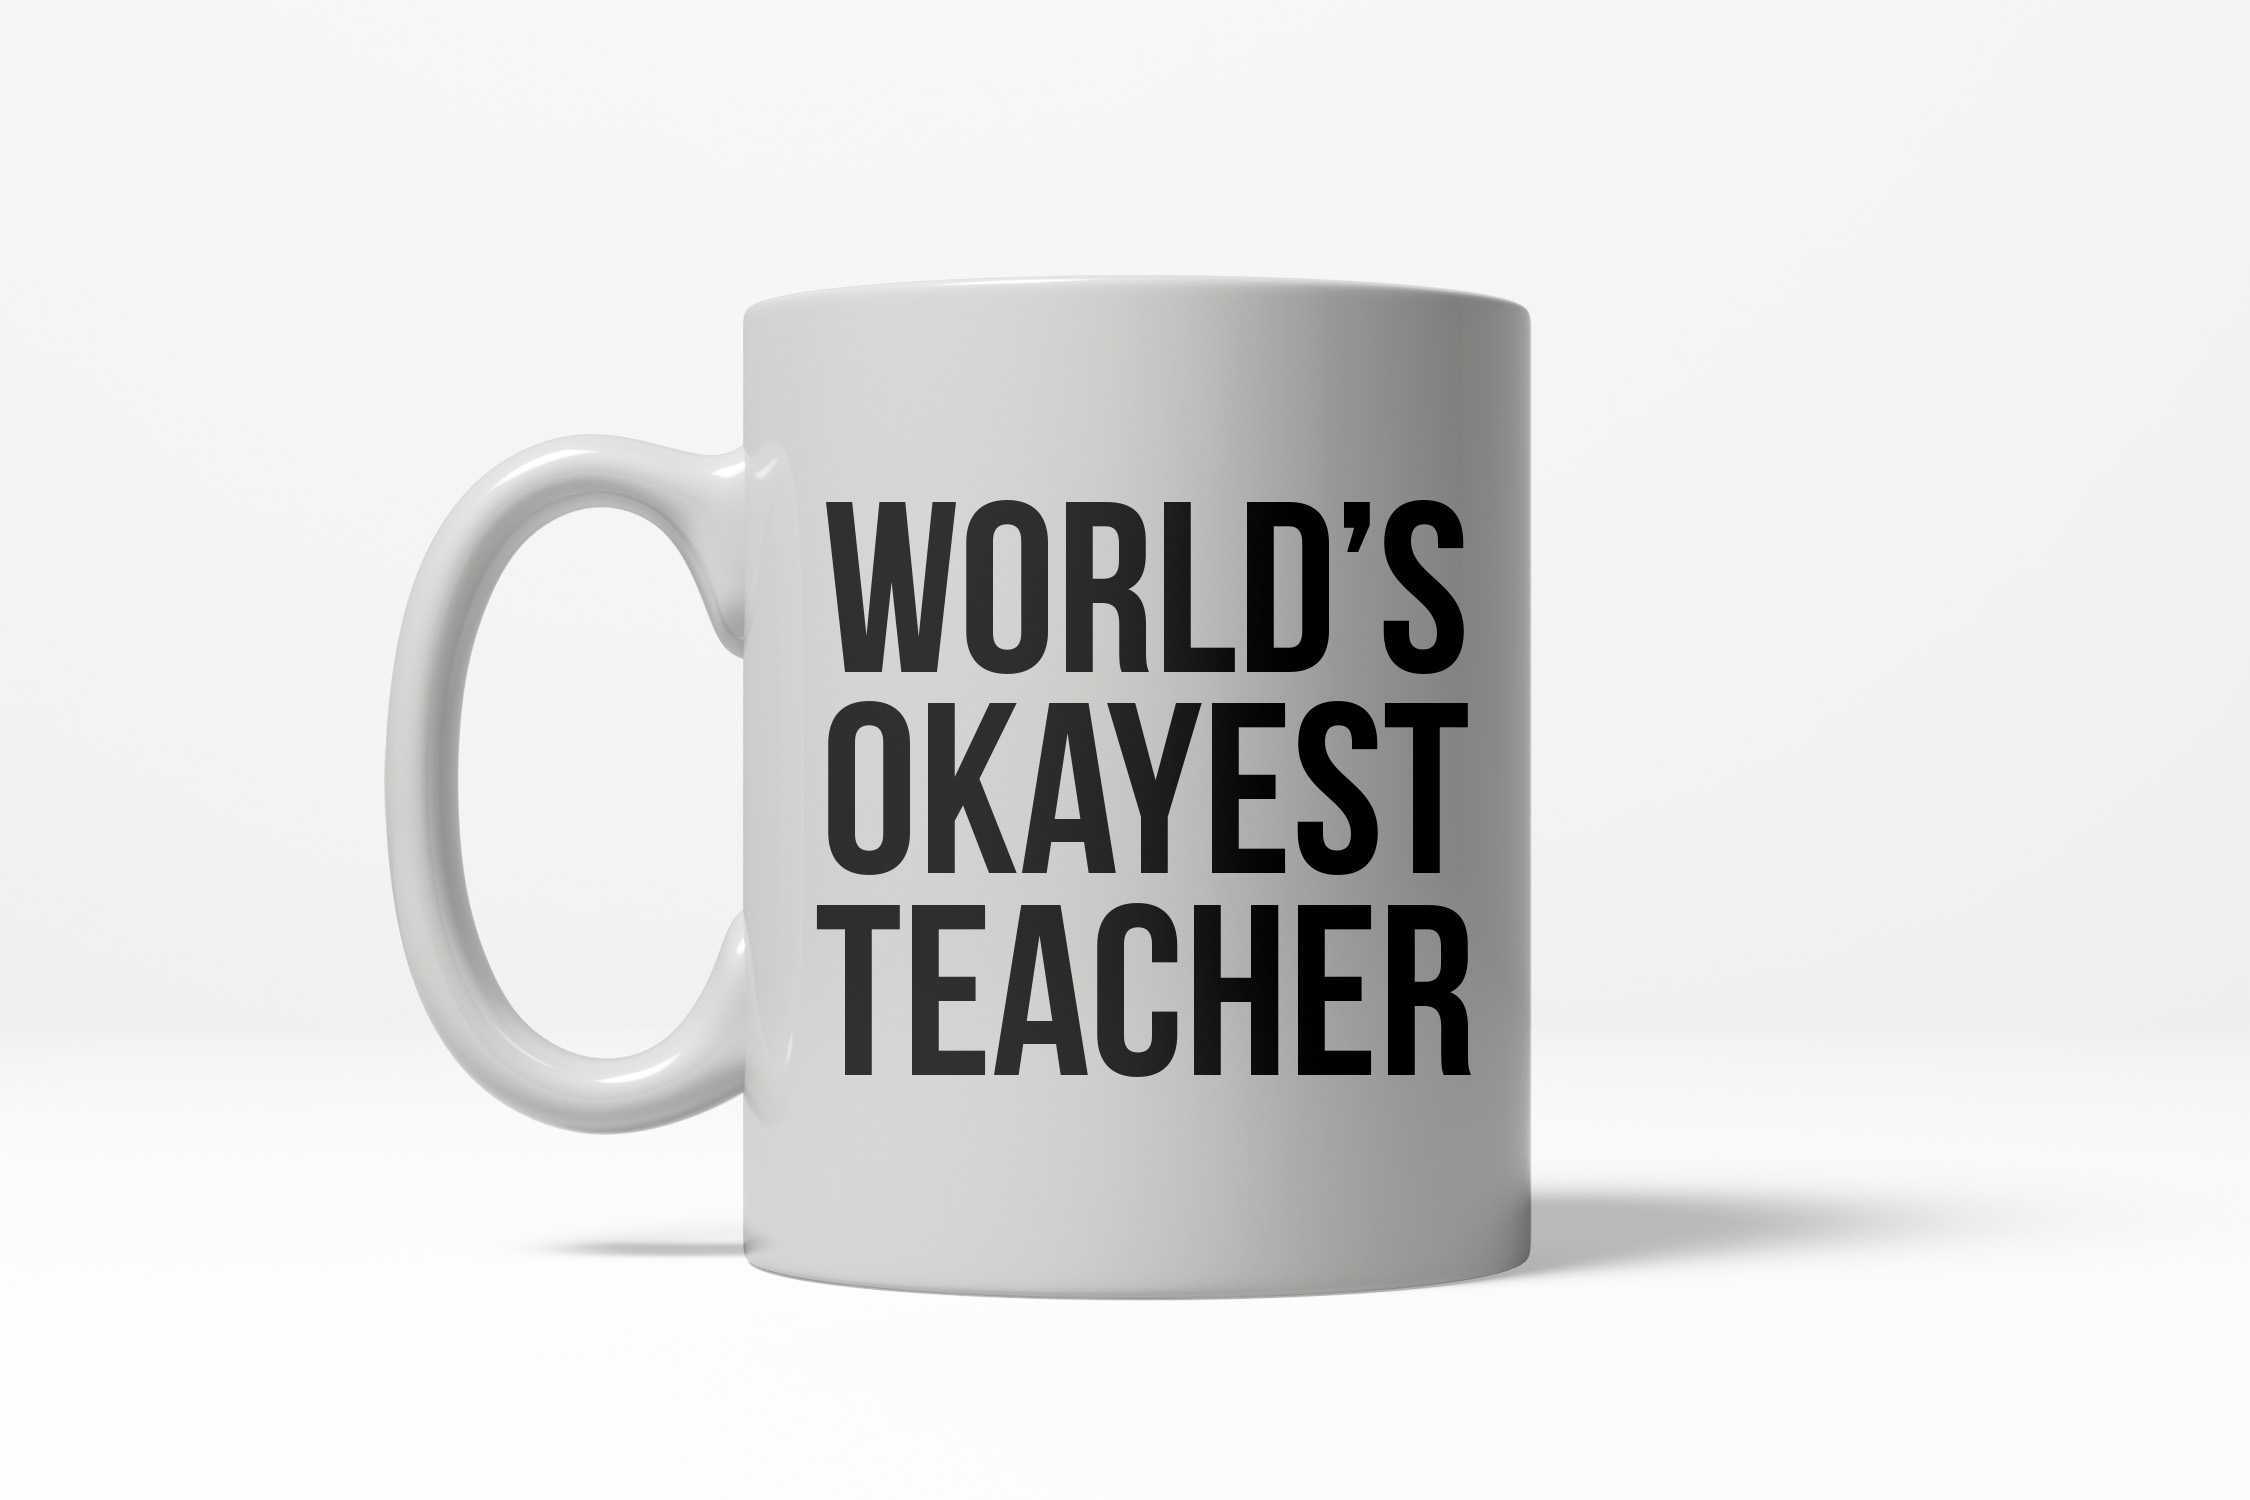 Crazy Dog Tshirts Worlds Okayest Teacher Funny School Education Ceramic Coffee Drinking Mug 11oz Cup